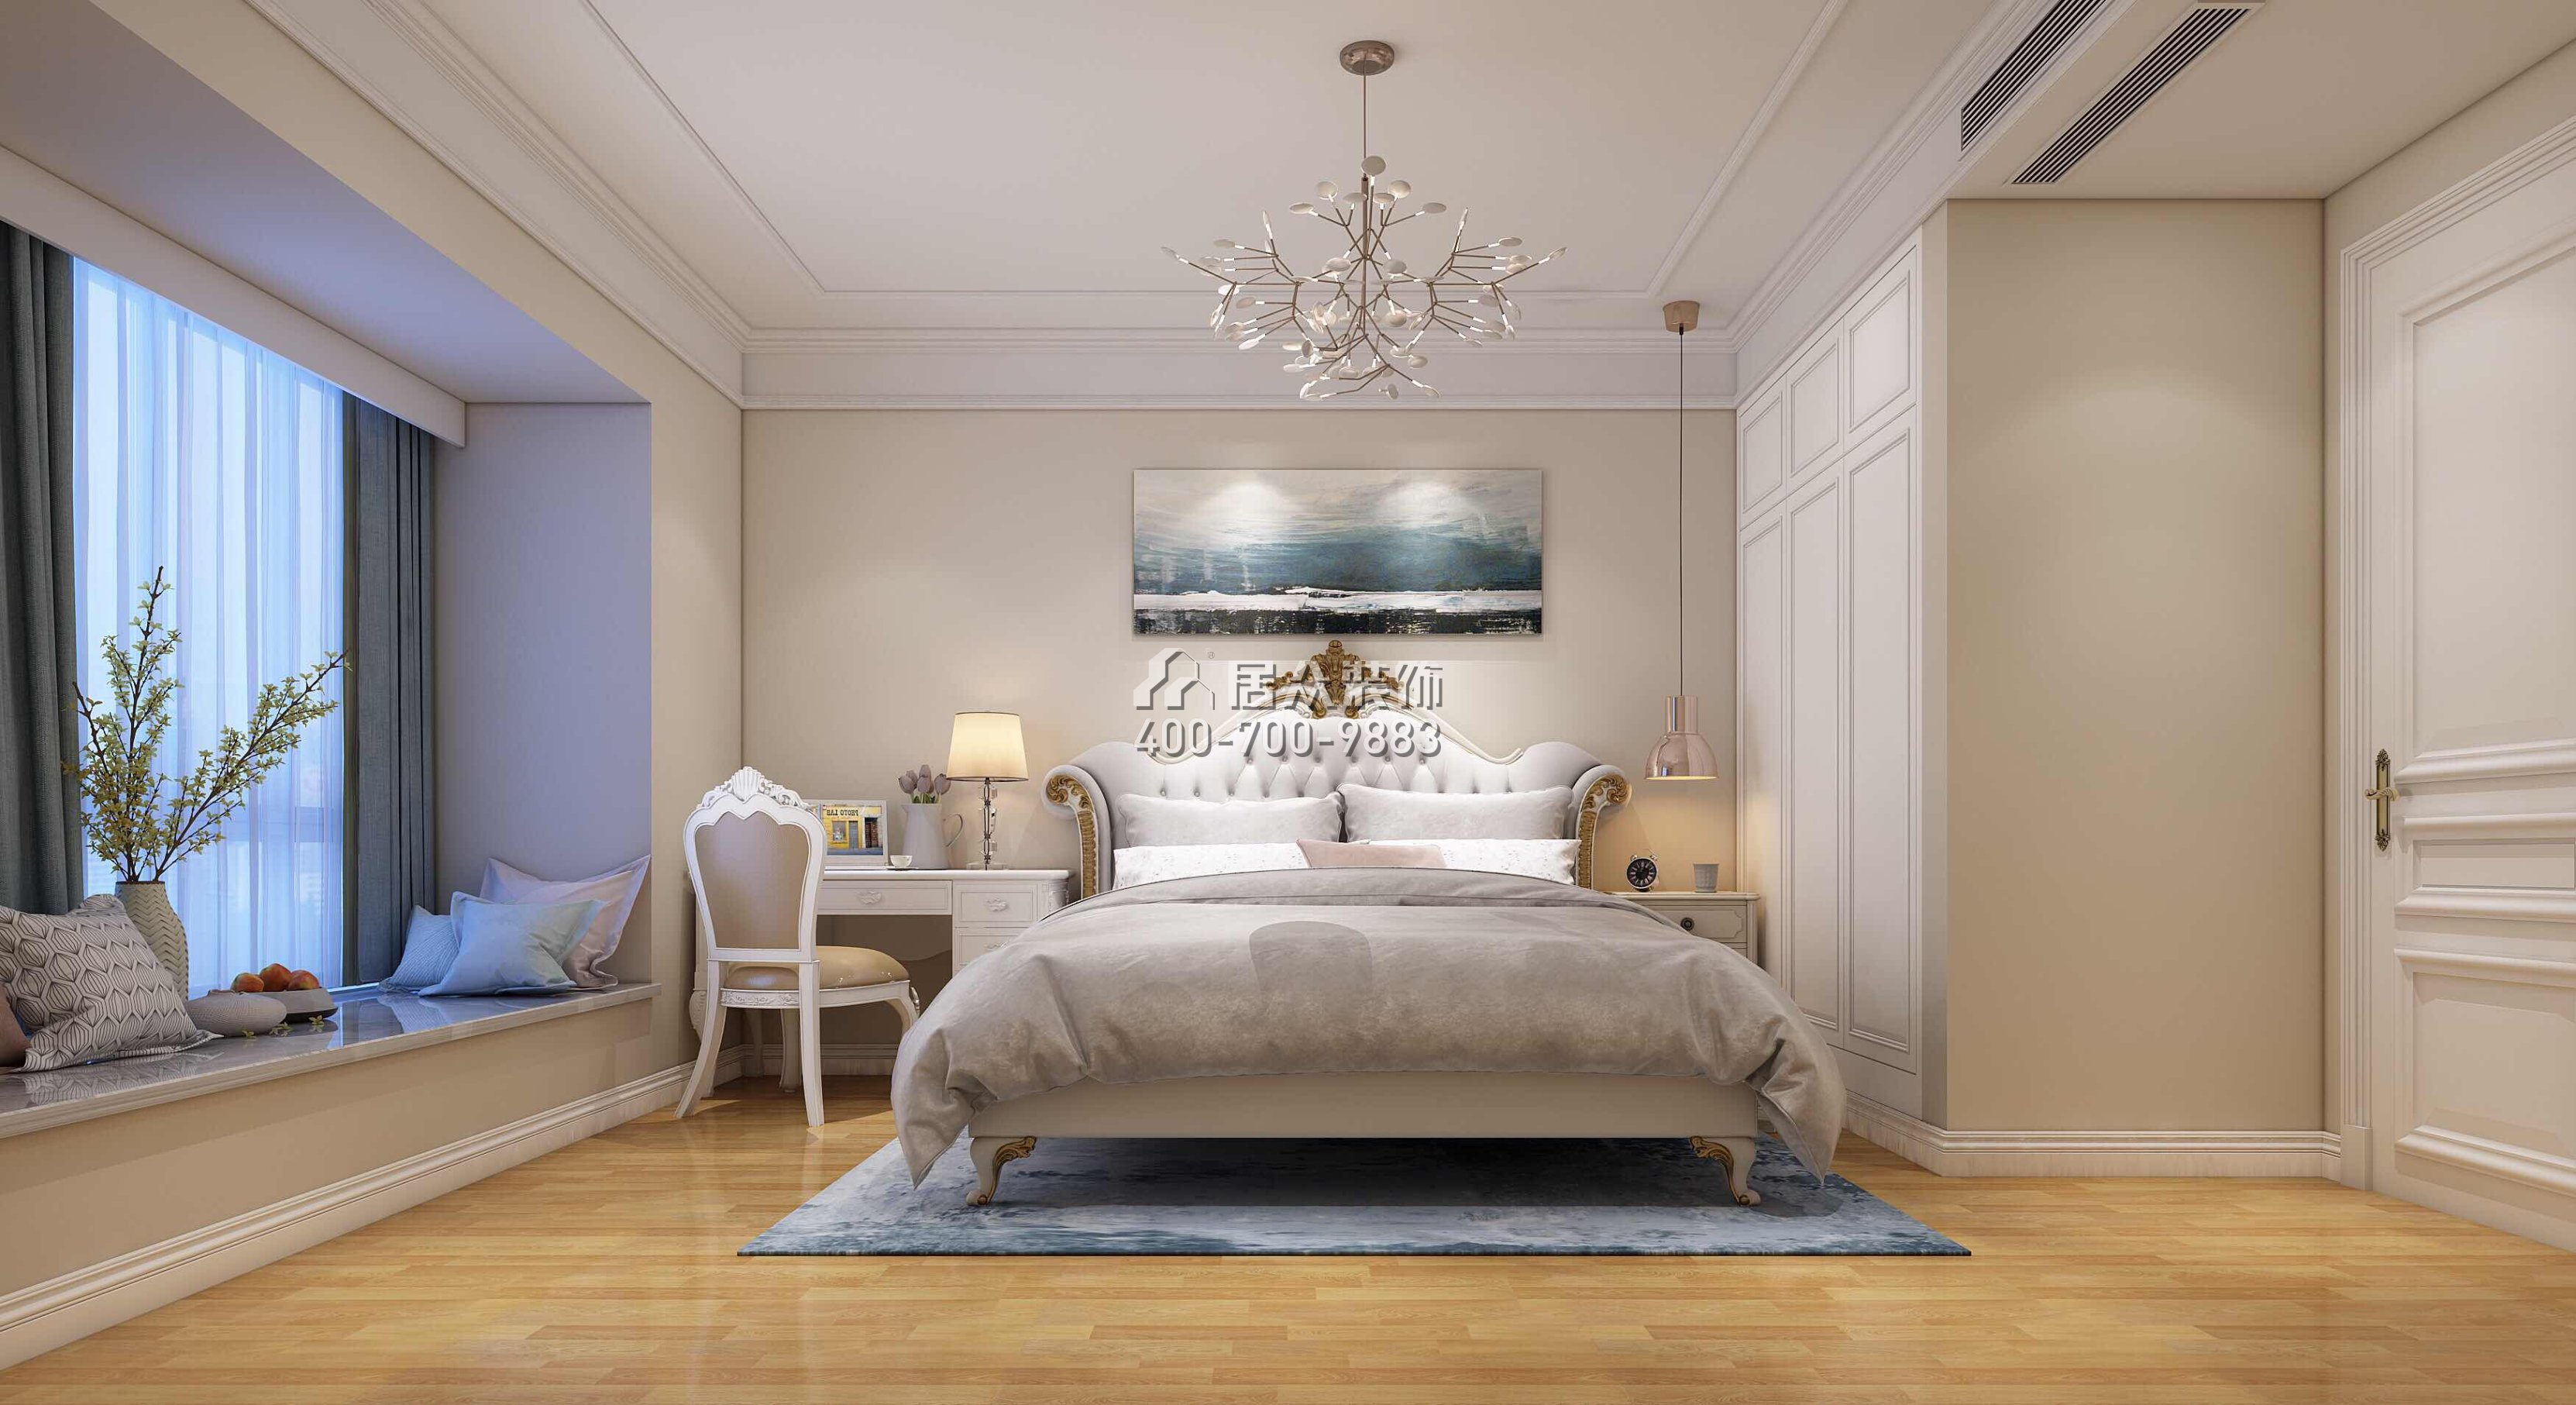 信义荔山御园197平方米欧式风格平层户型卧室装修效果图